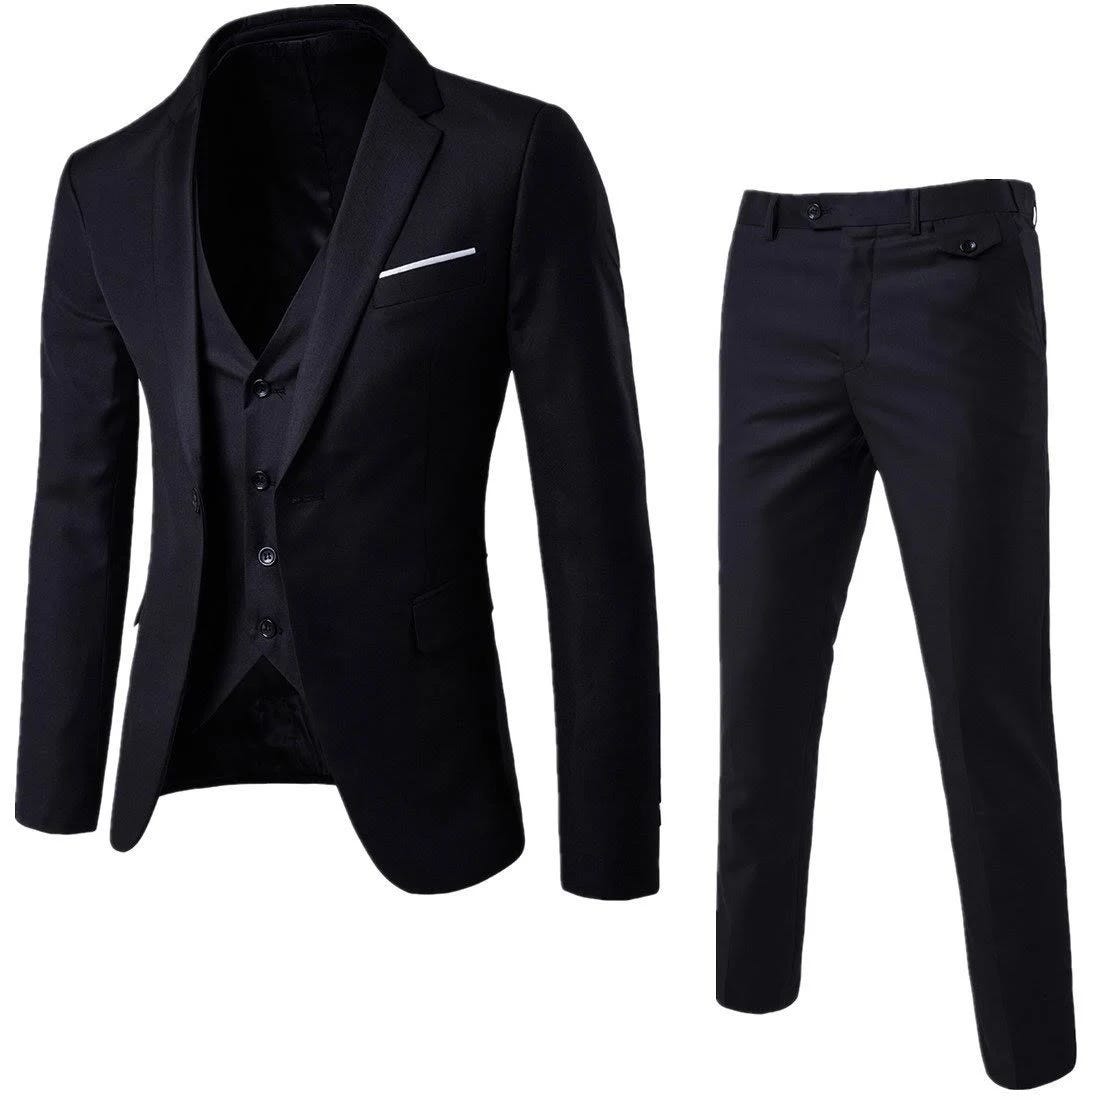 Slim Fit, Three Piece Men's Tuxedo Suit | Image